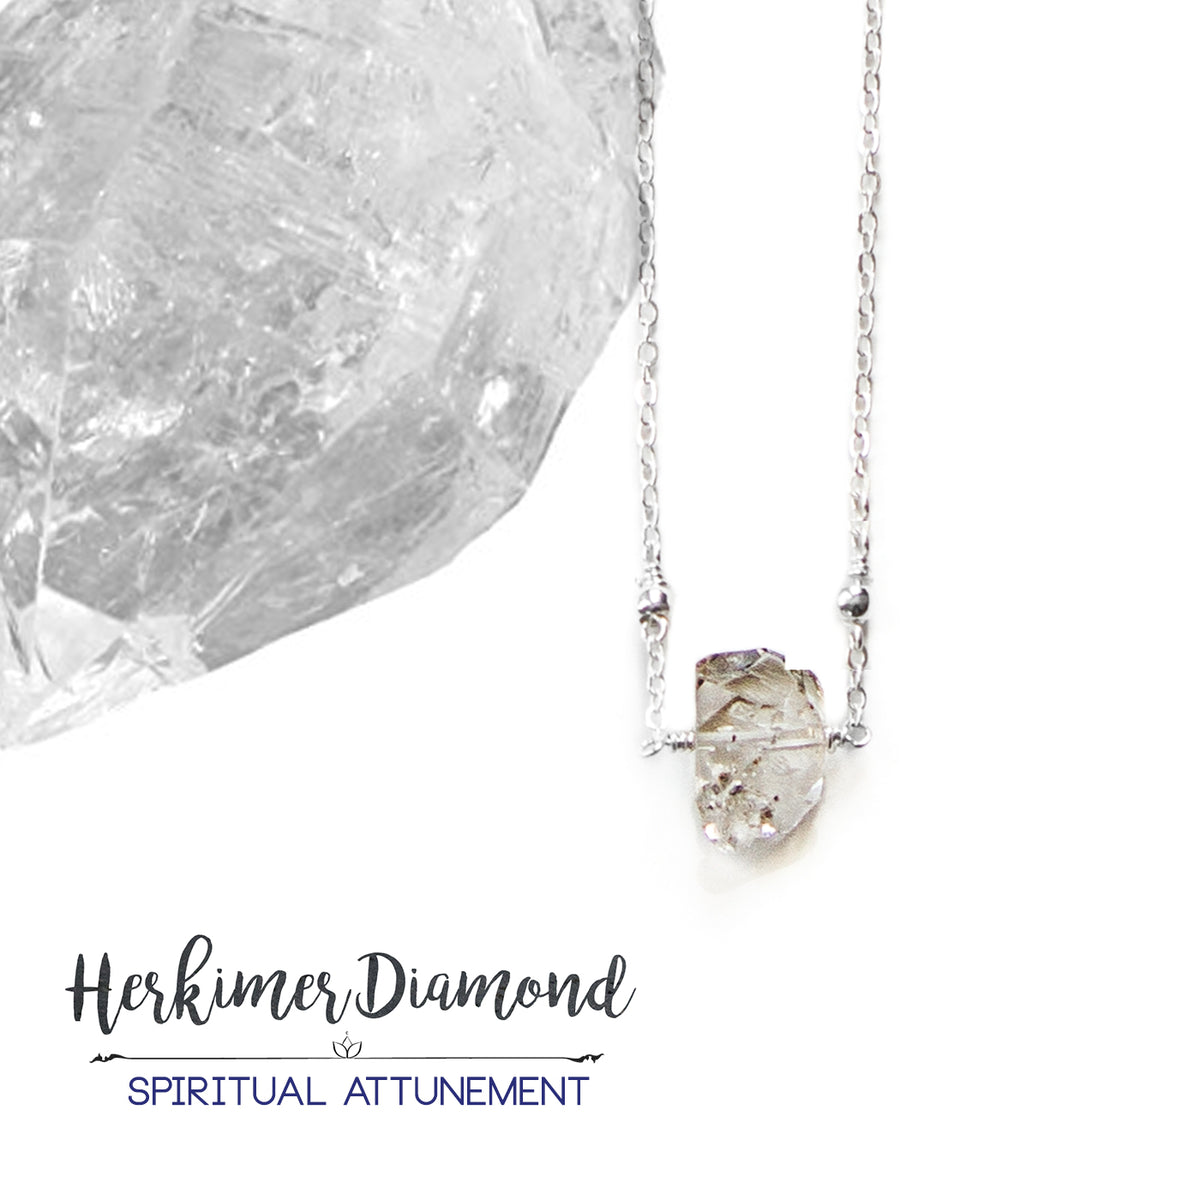 Herkimer Diamond: Stone of Spiritual Attunement